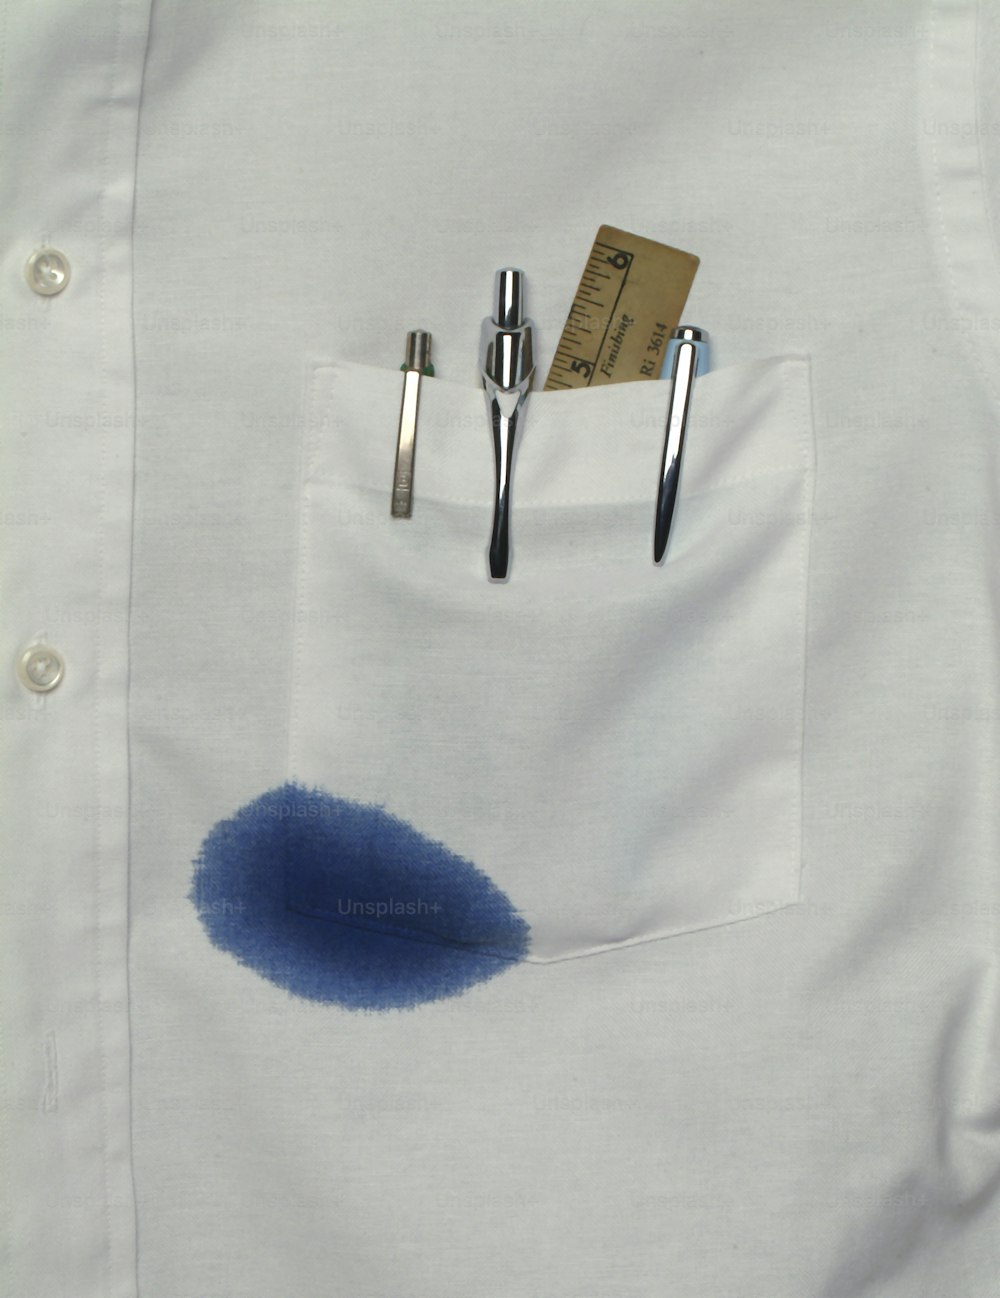 눈금자와 여러 개의 펜을 수납할 수 있는 셔츠 주머니의 클로즈업 뷰, 그 중 하나는 파란색 잉크가 새고 있습니다., 캘리포니아, 1970년대. (사진: 톰 켈리/게티 이미지)